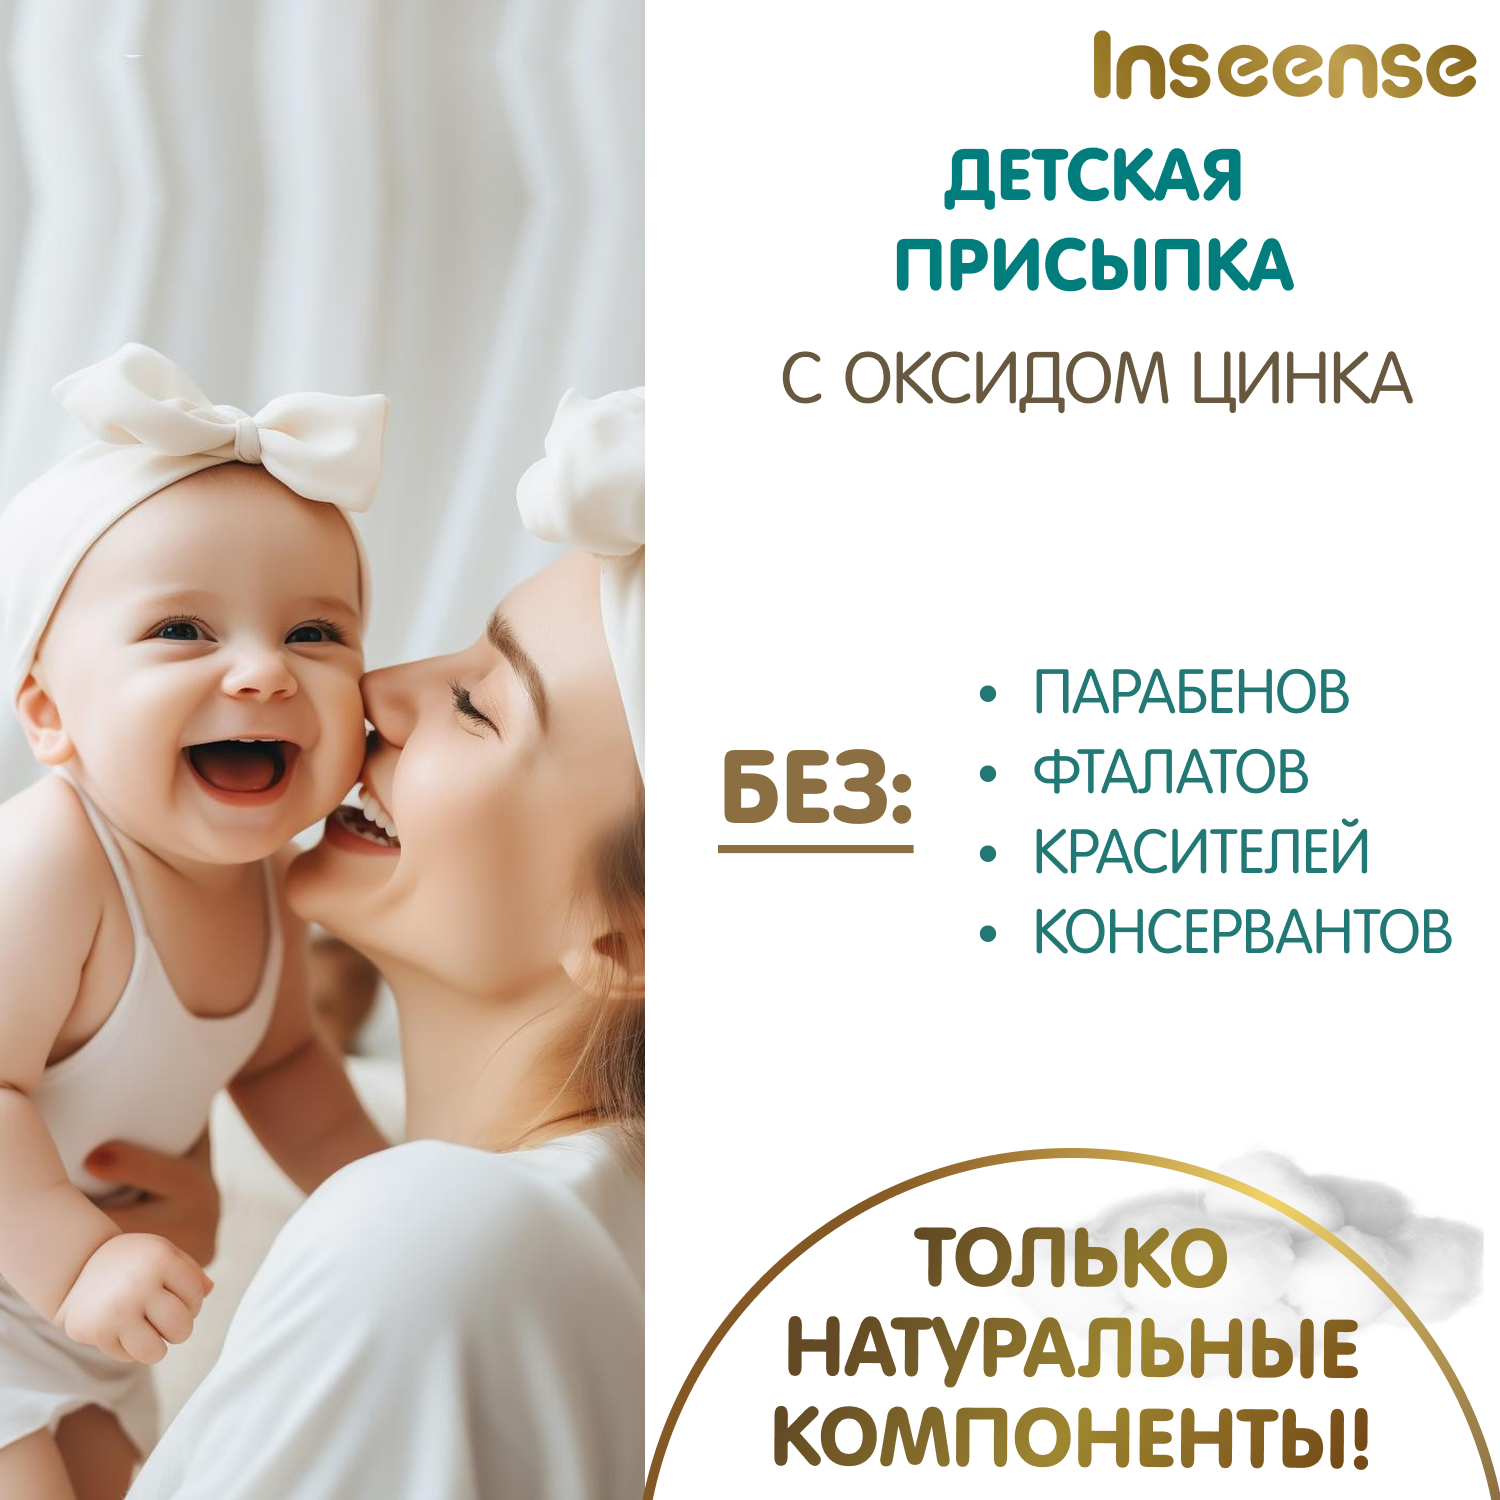 Присыпка детская INSEENSE для новорожденных с оксид цинка 2 шт. по 100 гр. - фото 3